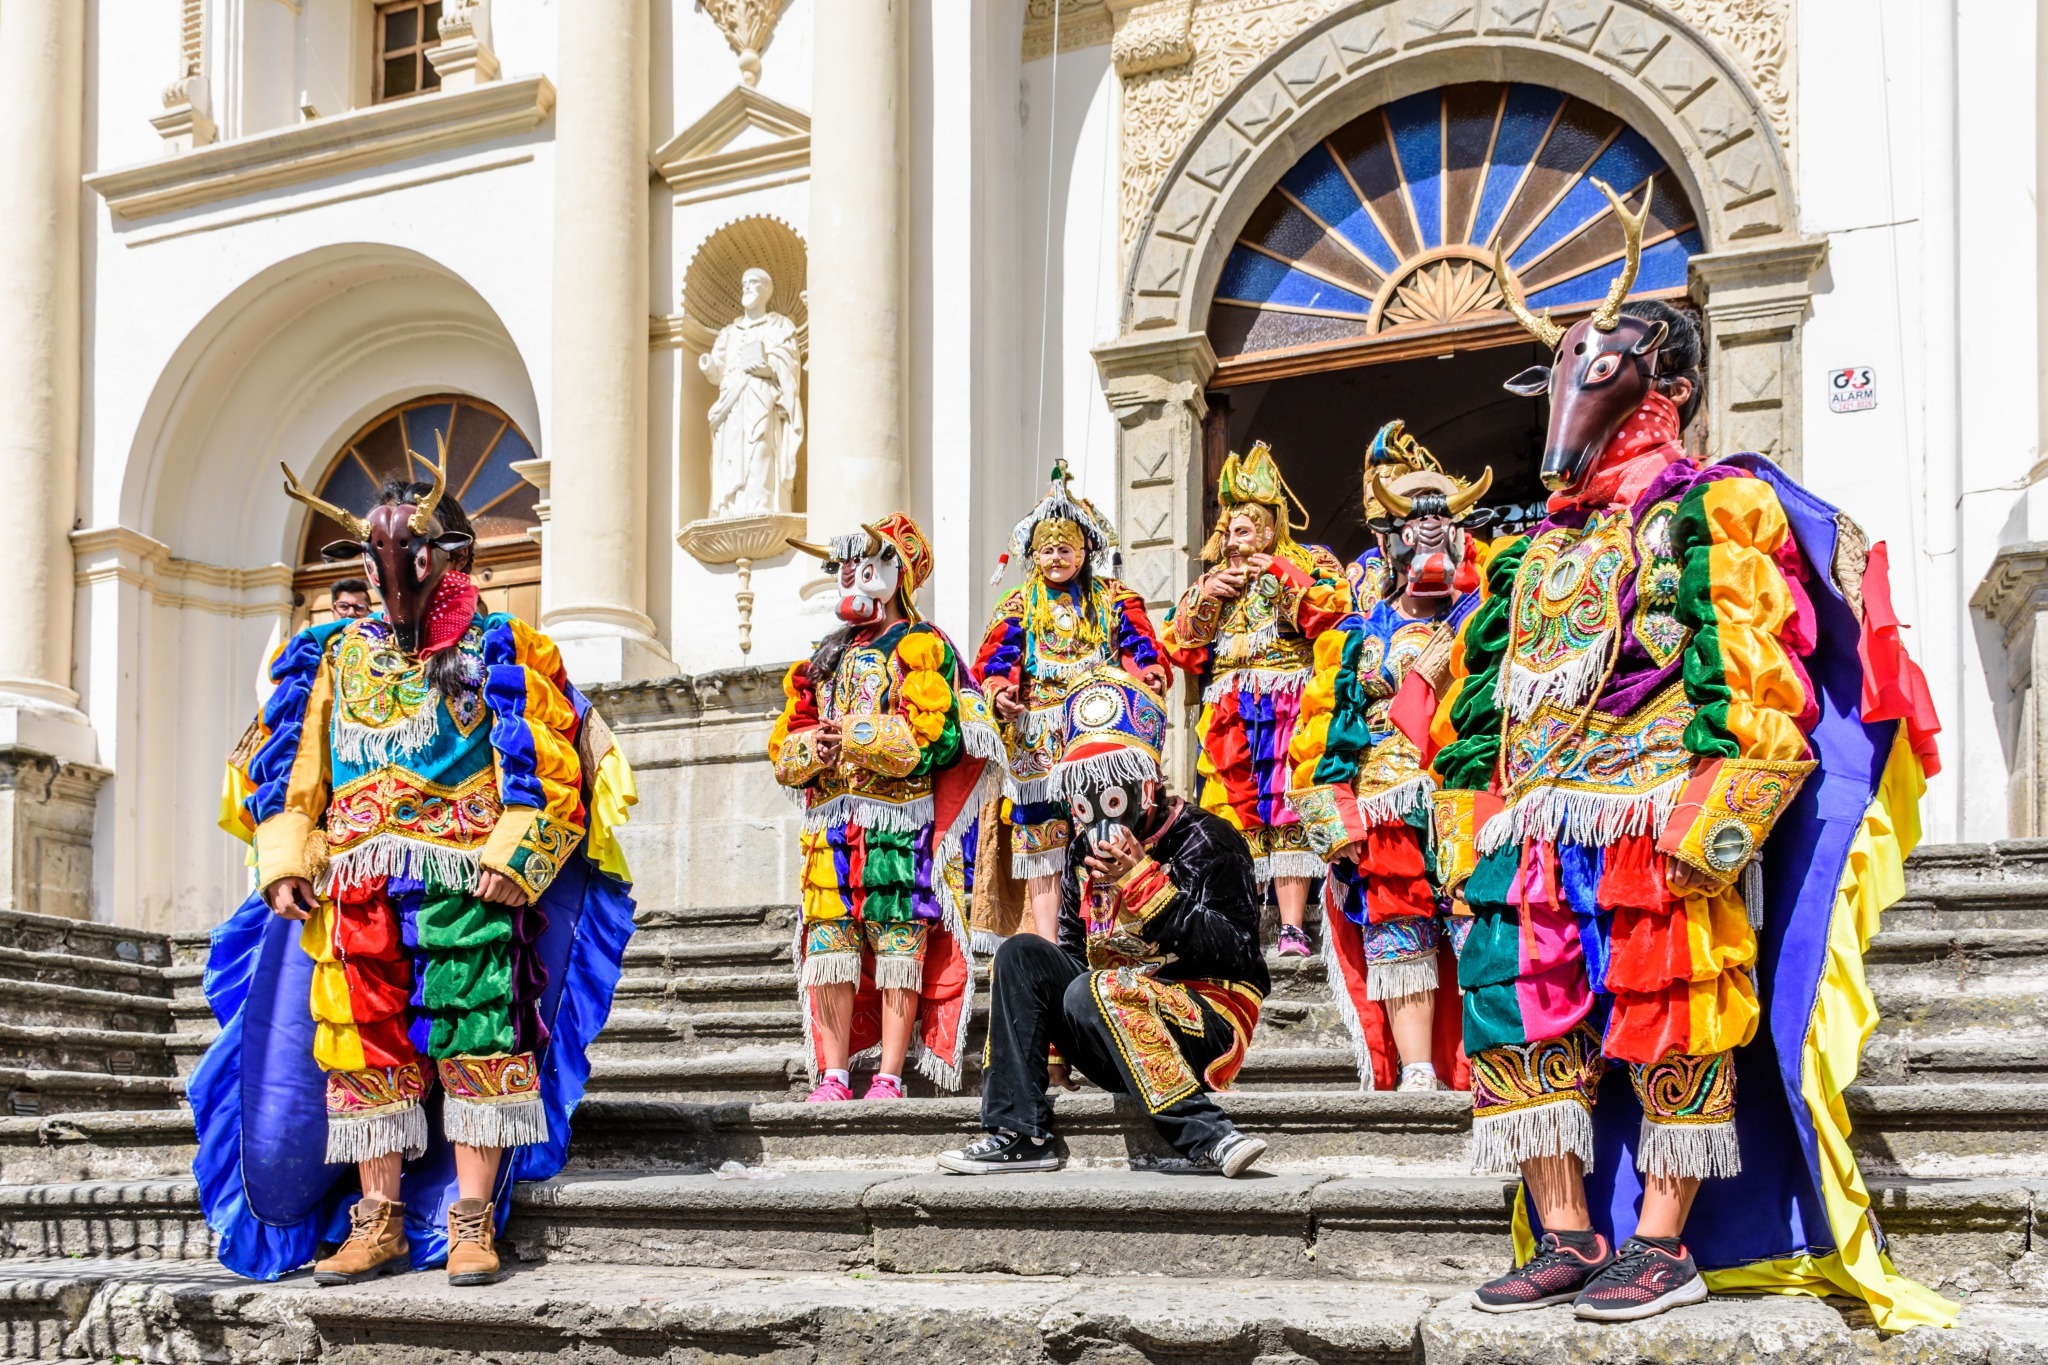 Baile de los Venados folkloric dance in Antigua Guatemala